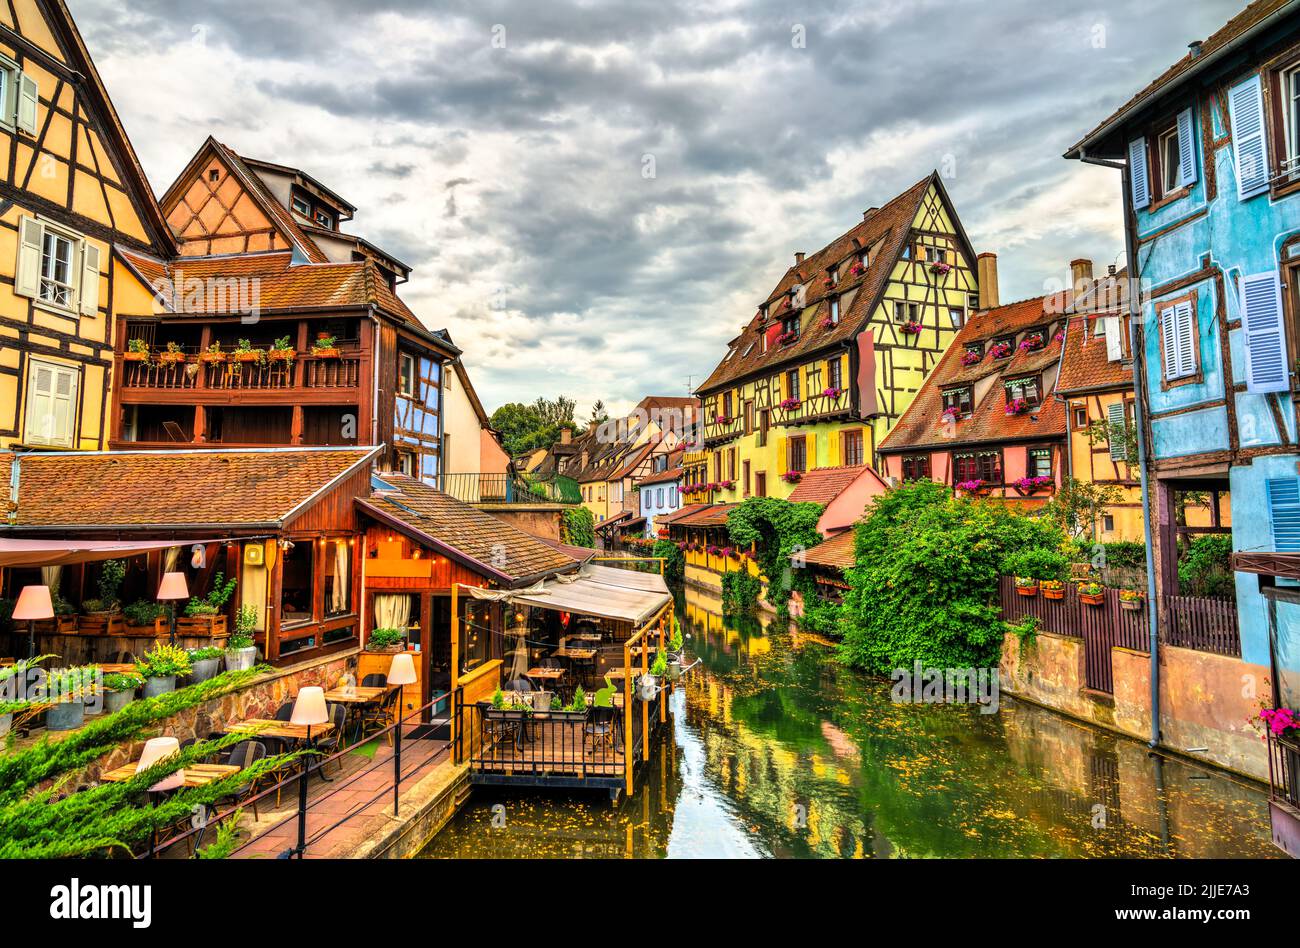 Casas tradicionales con entramado de madera en Colmar, Francia Foto de stock